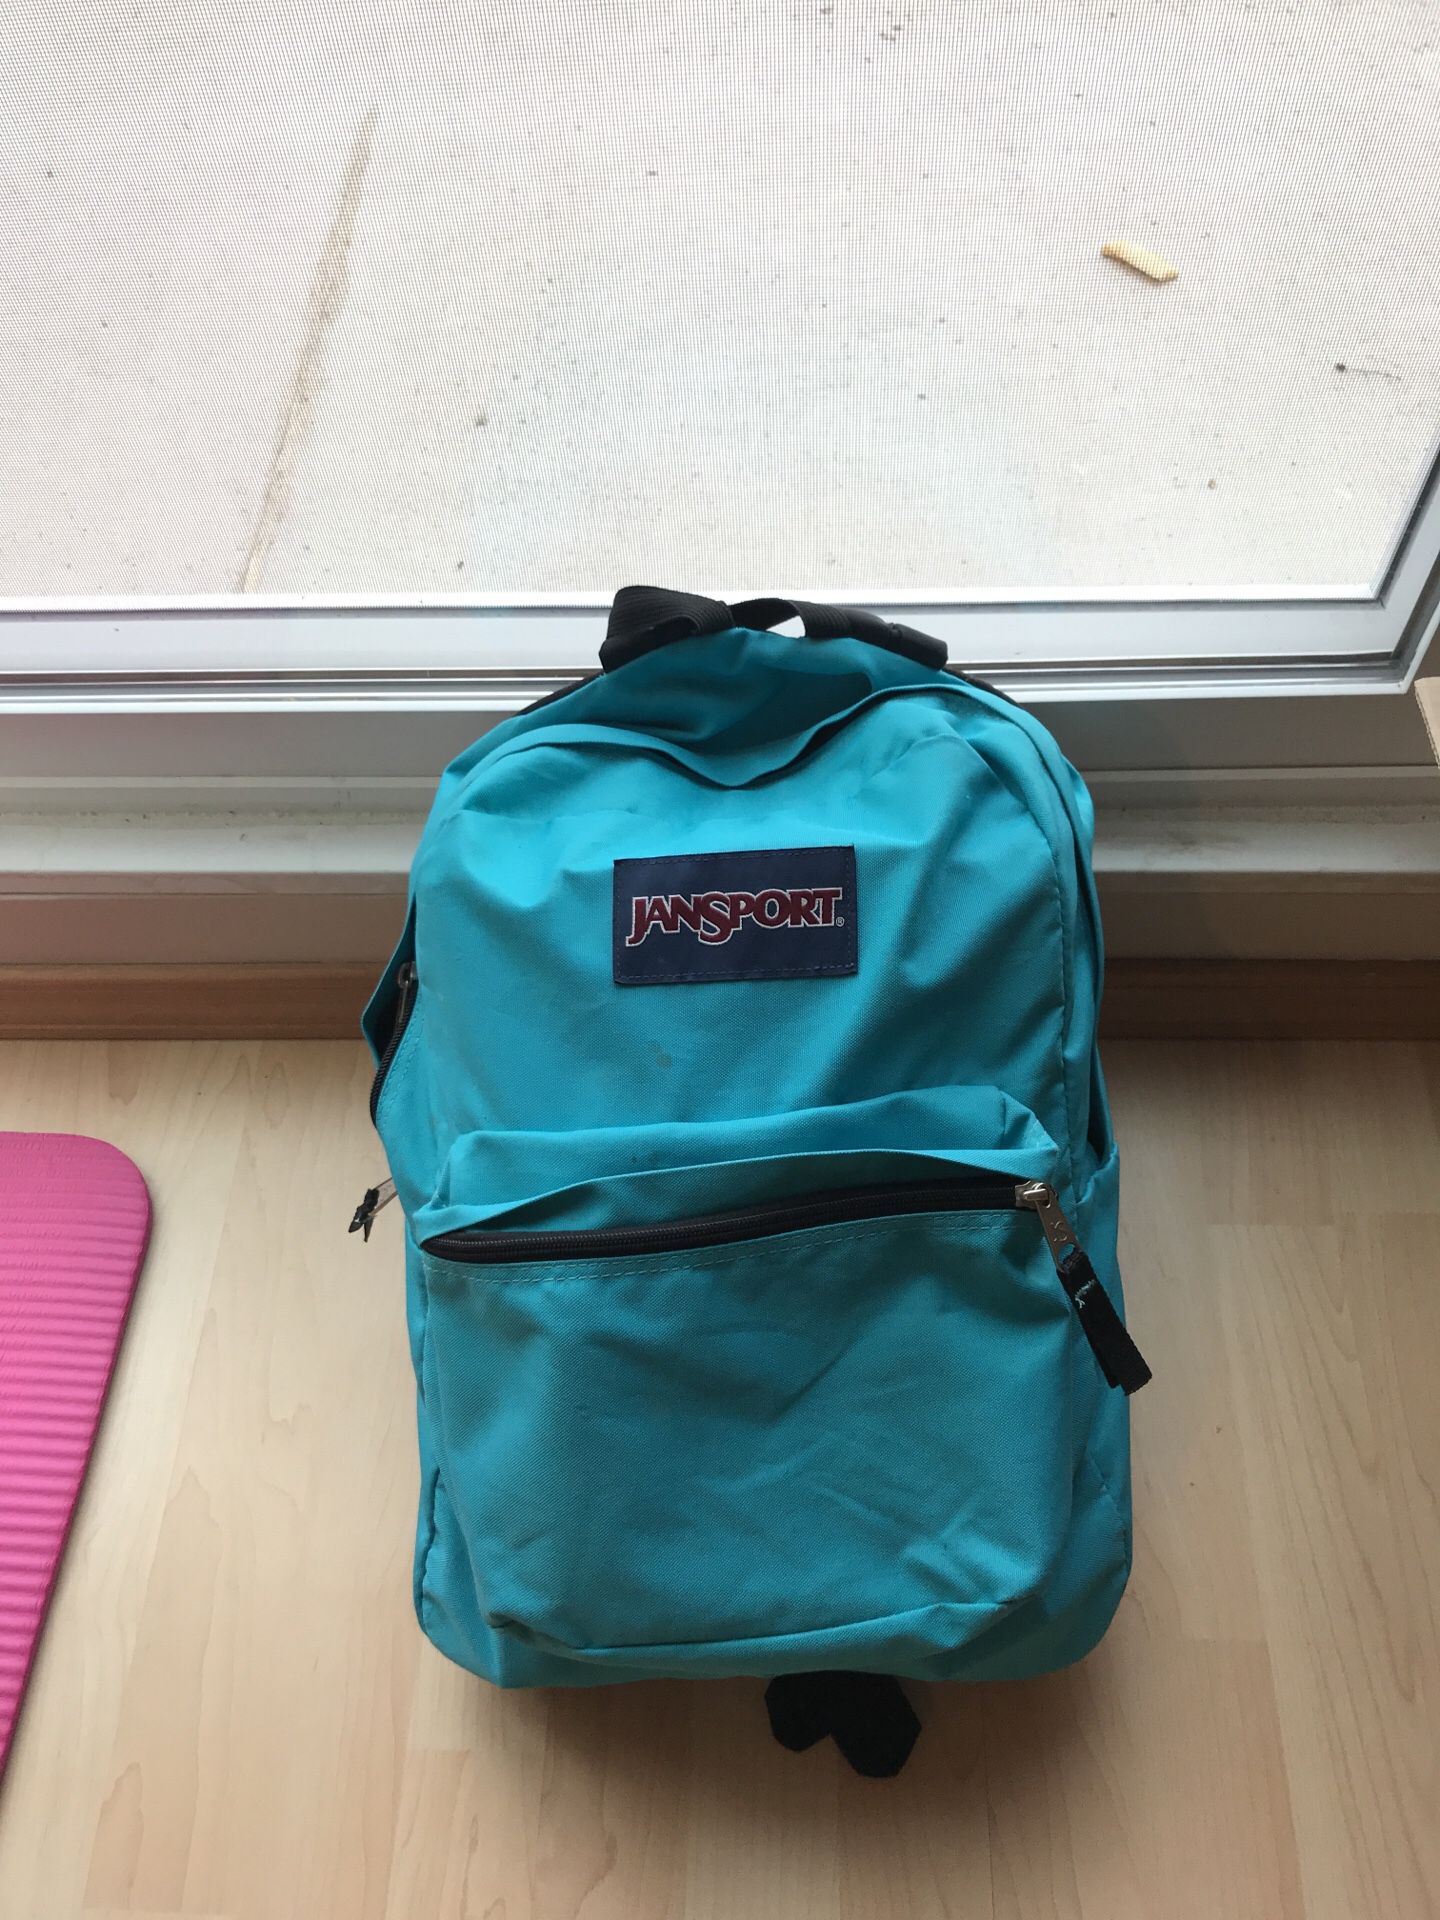 Lightly used Jansport backpack